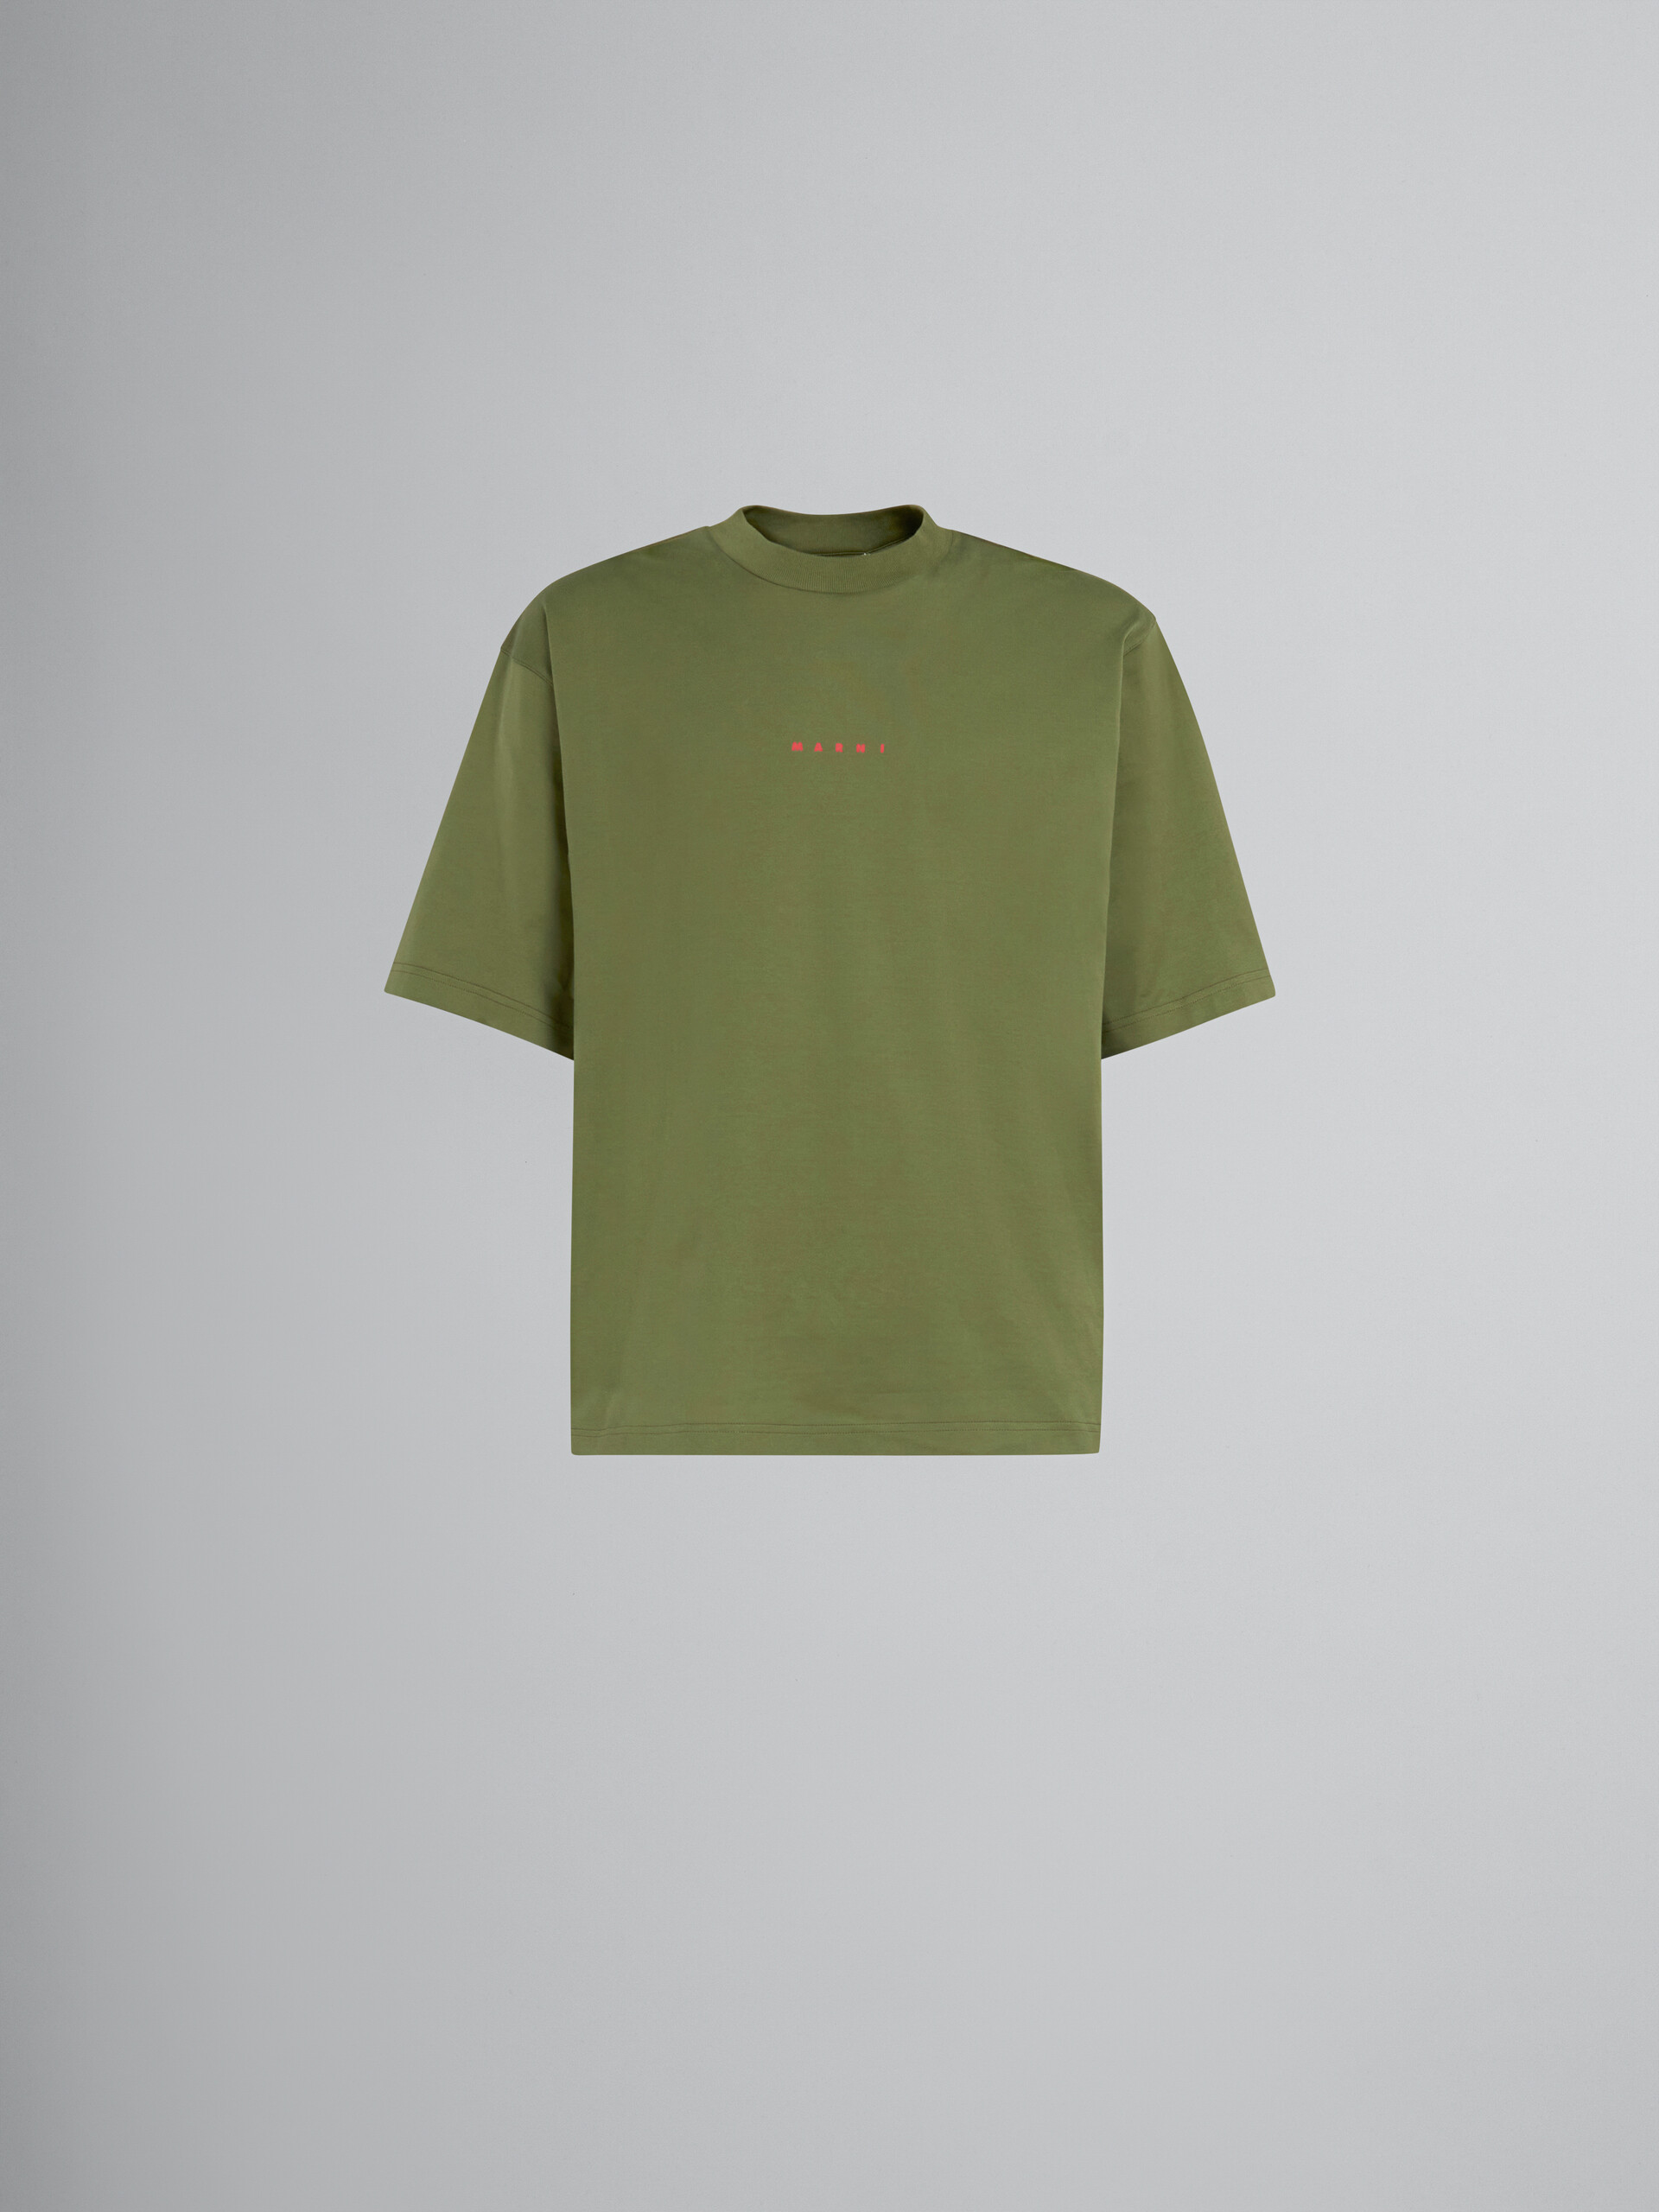 グリーン ロゴ入りオーガニックコットン製Tシャツ - Tシャツ - Image 1